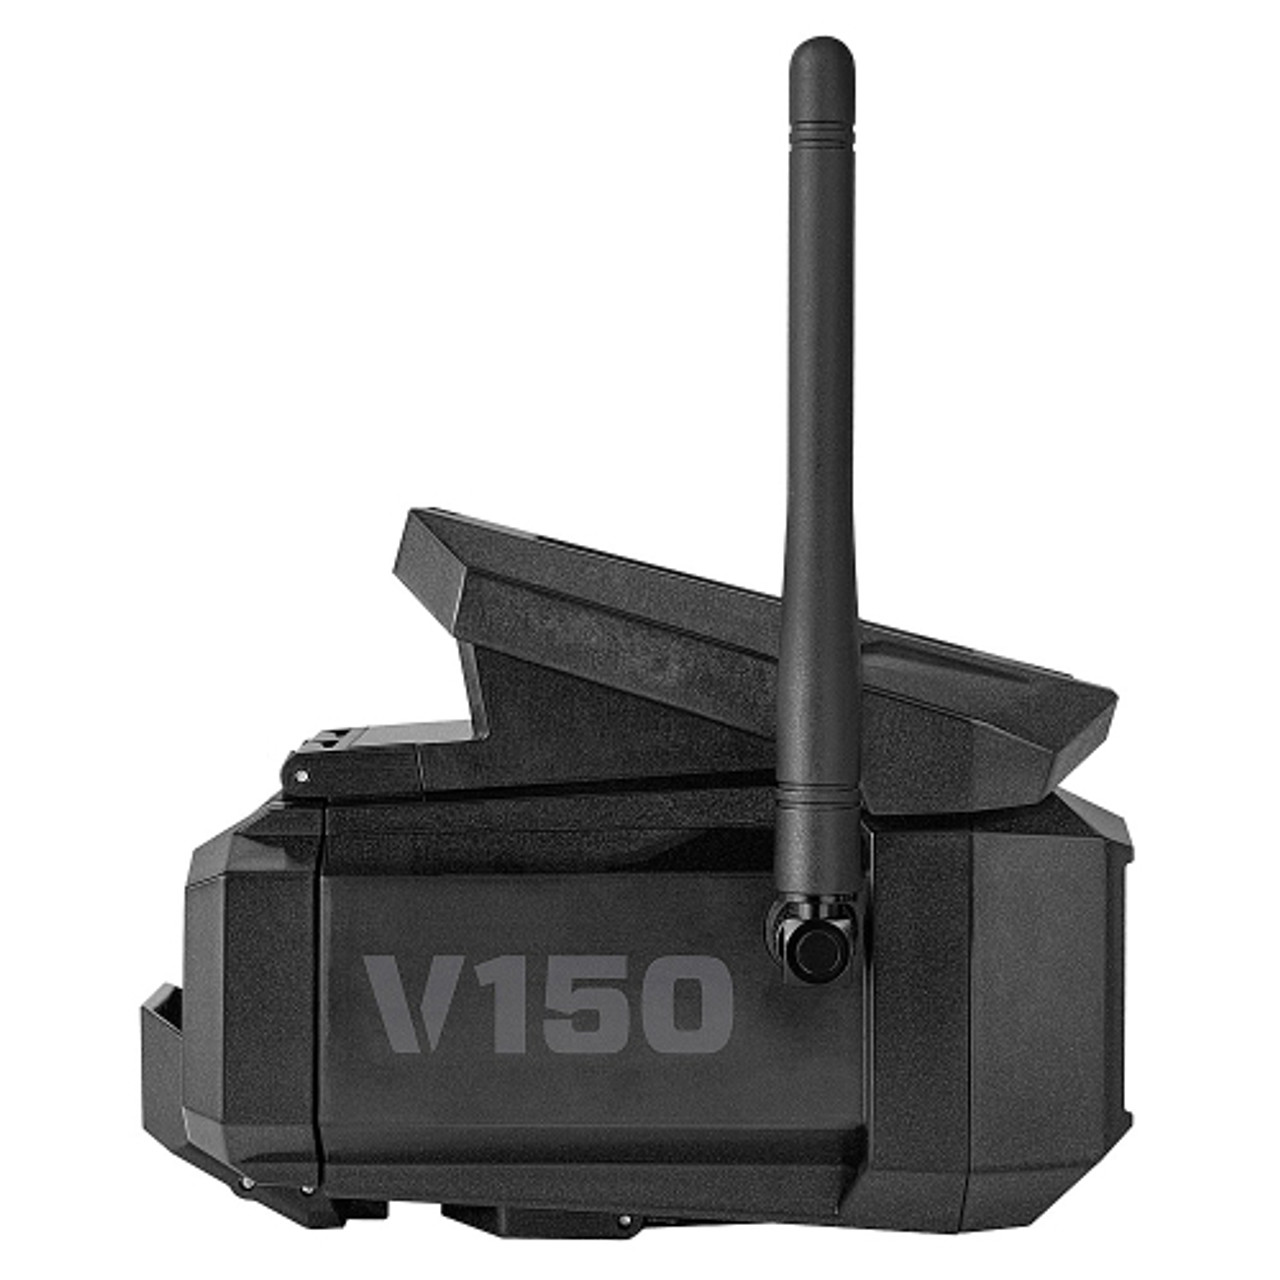 Vosker - V150 Solar-Powered LTE Cellular Outdoor Security Camera (US Nation Wide Network)